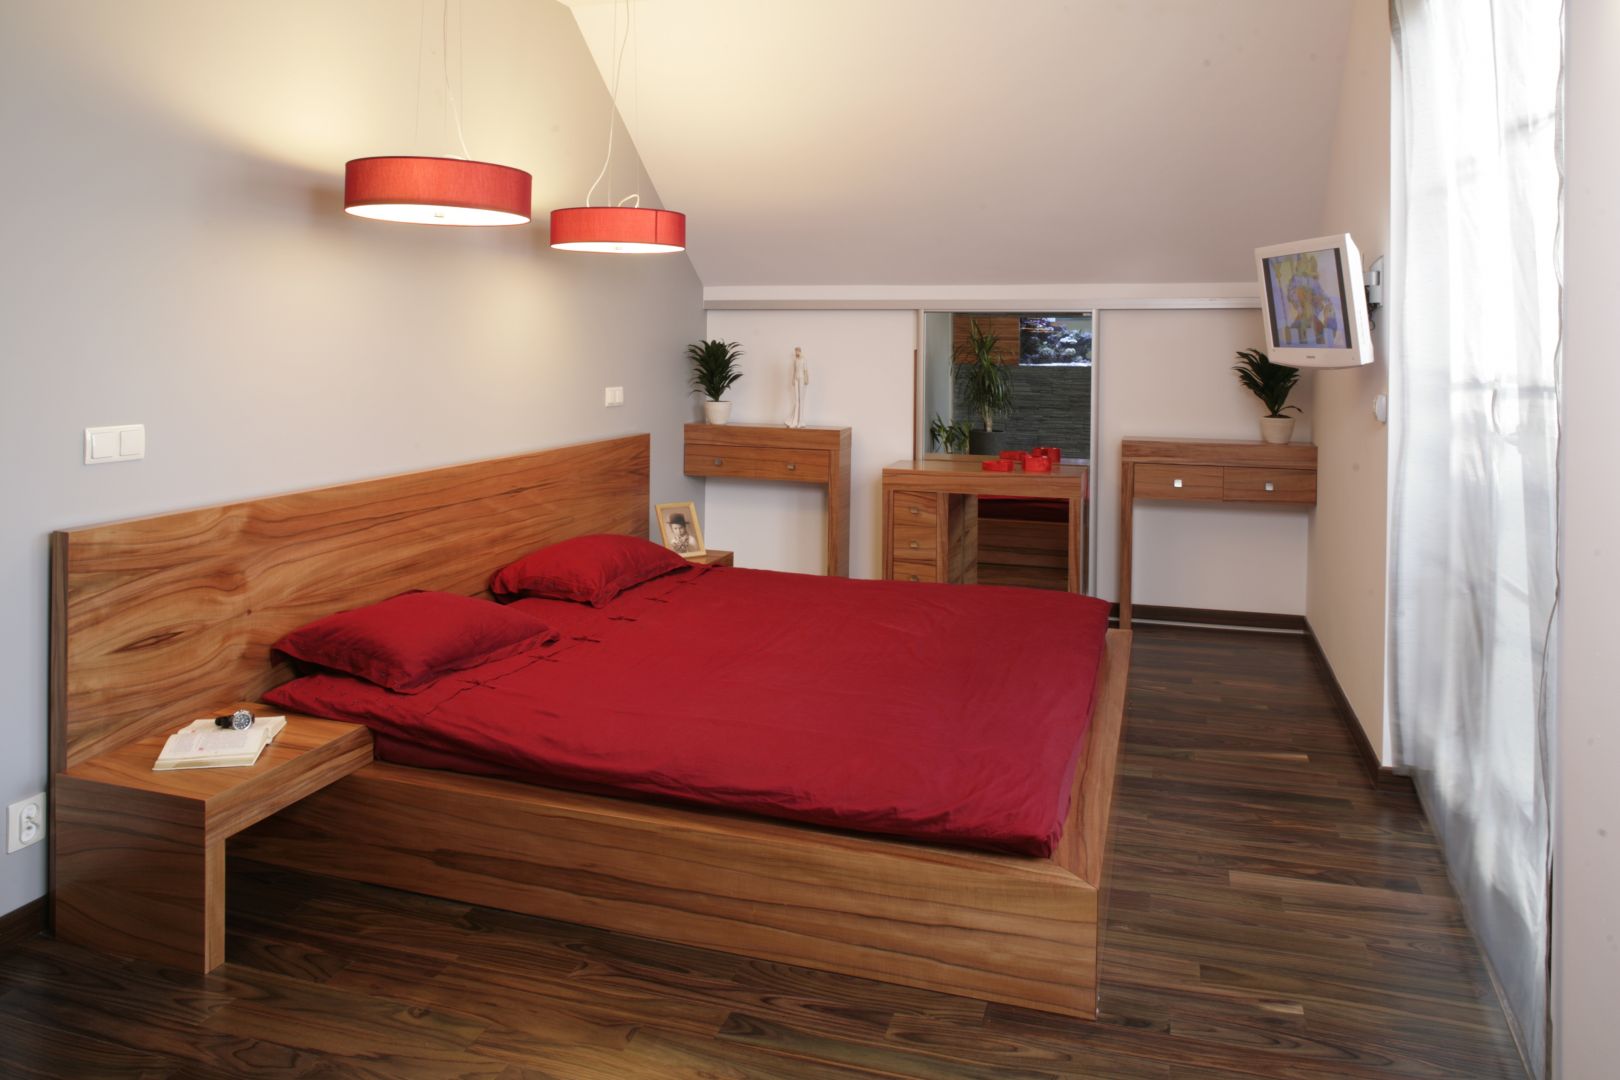 Mała sypialnia utrzymana w jasnej kolorystyce. Wygodne łóżko idealnie wpisuje się w niewielki metraż wnętrza. Projekt: Magda Olchowik. Fot. Bartosz Jarosz